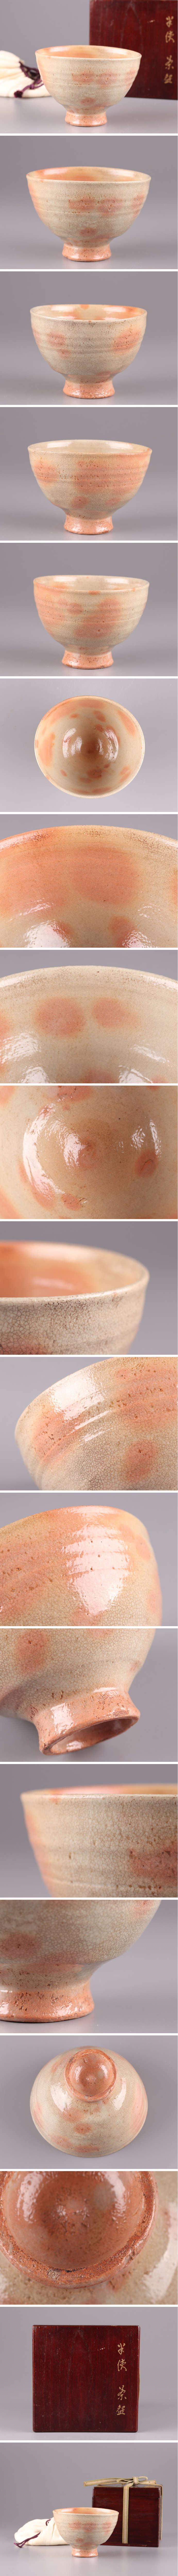 【受注可】古美術 朝鮮古陶磁器 李朝 御本 茶碗 古作 時代物 極上品 初だし品 3074 李朝